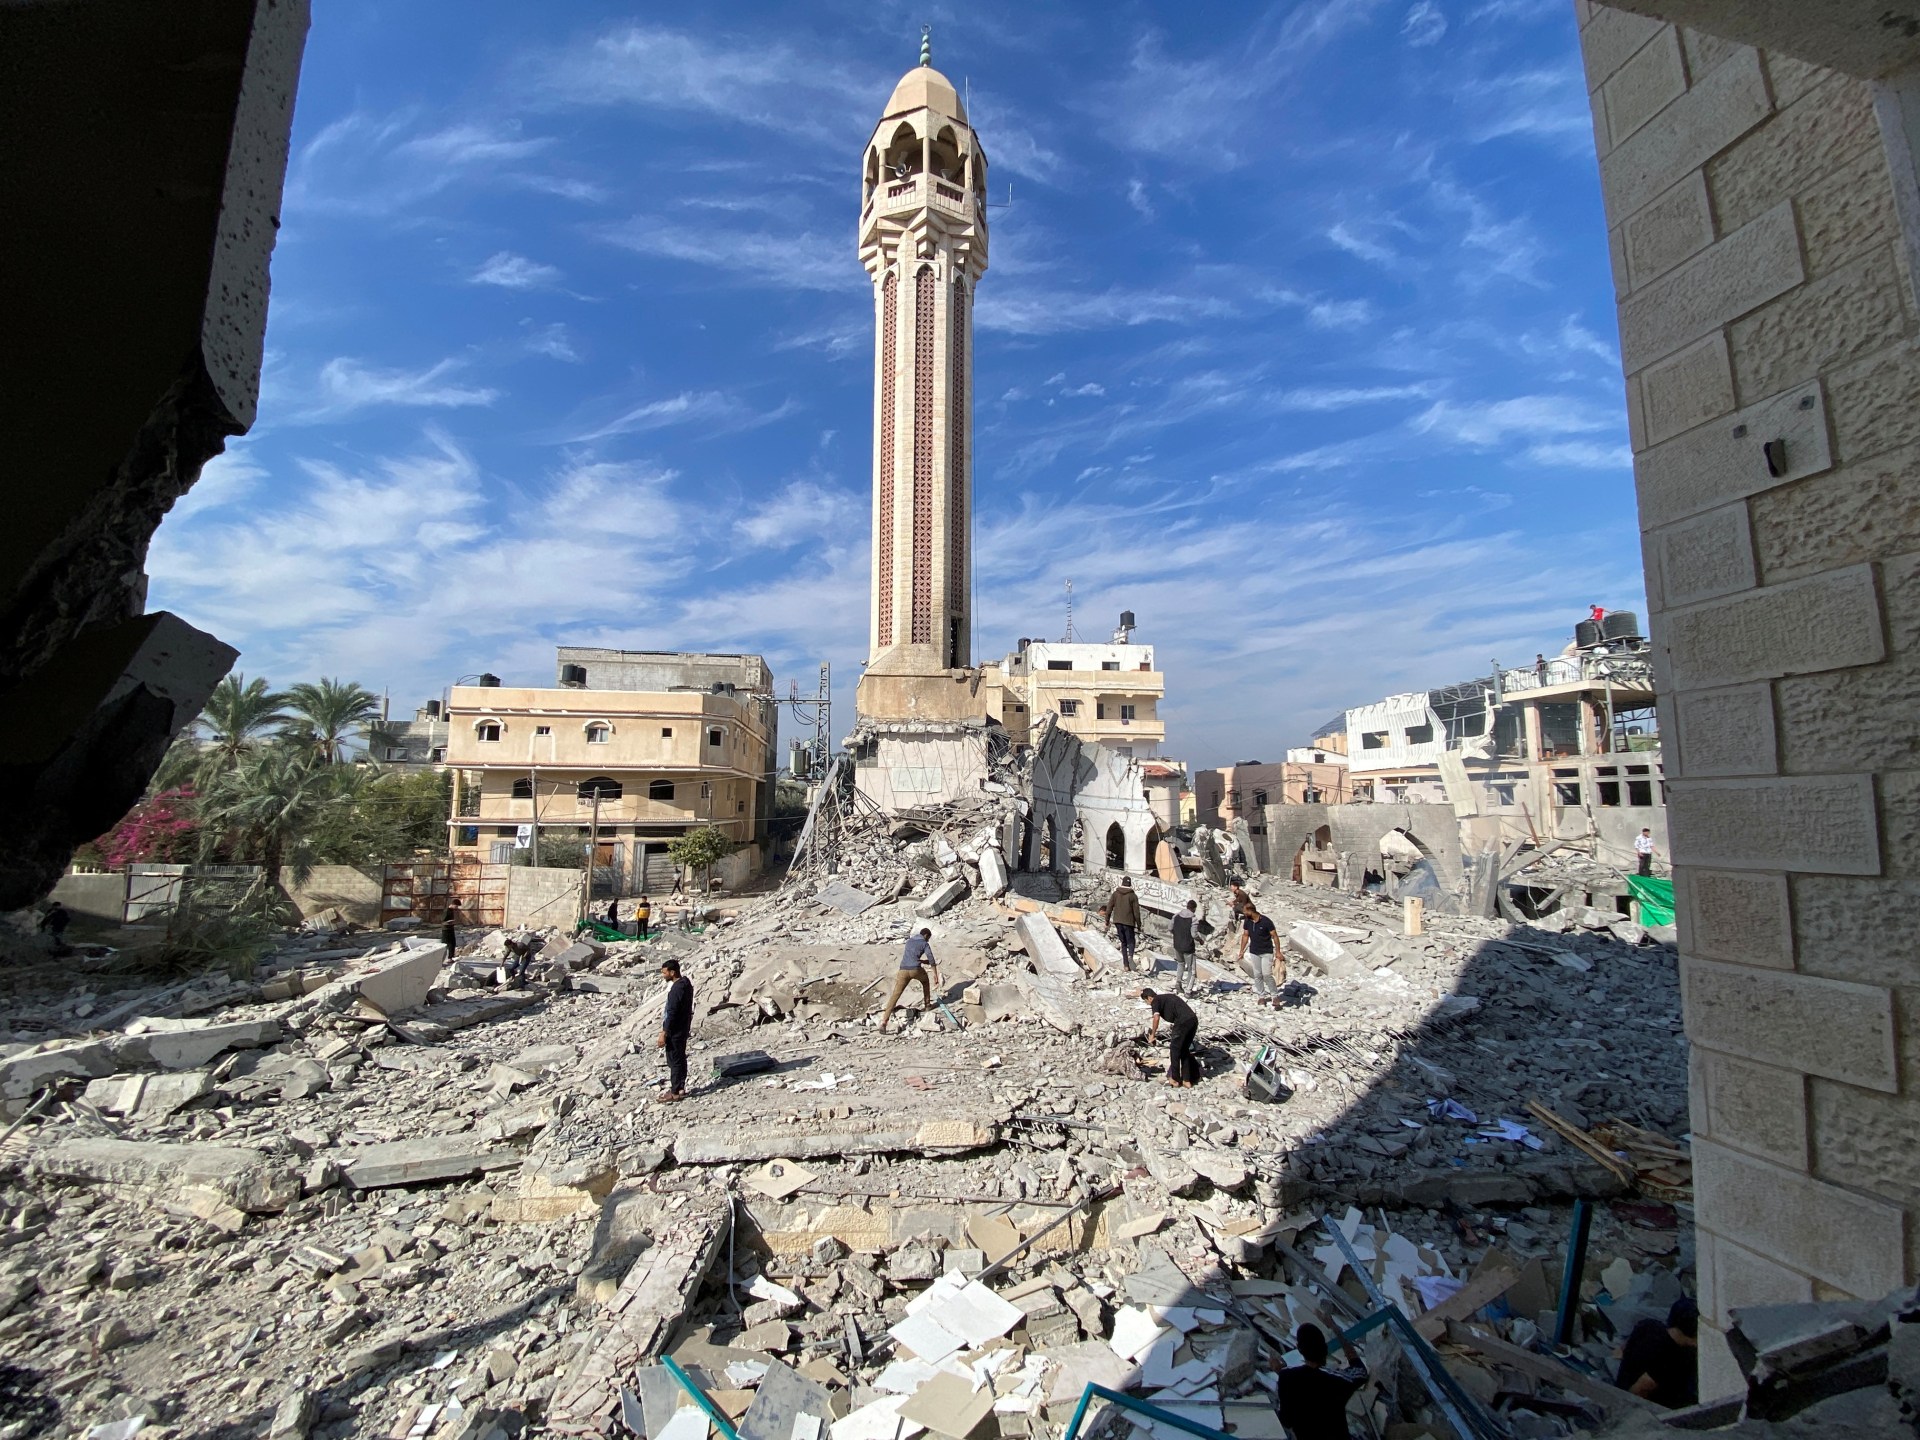 حماس تقول إن مسجد غزة دمر وتحث اليونسكو على حماية التراث |  أخبار غزة